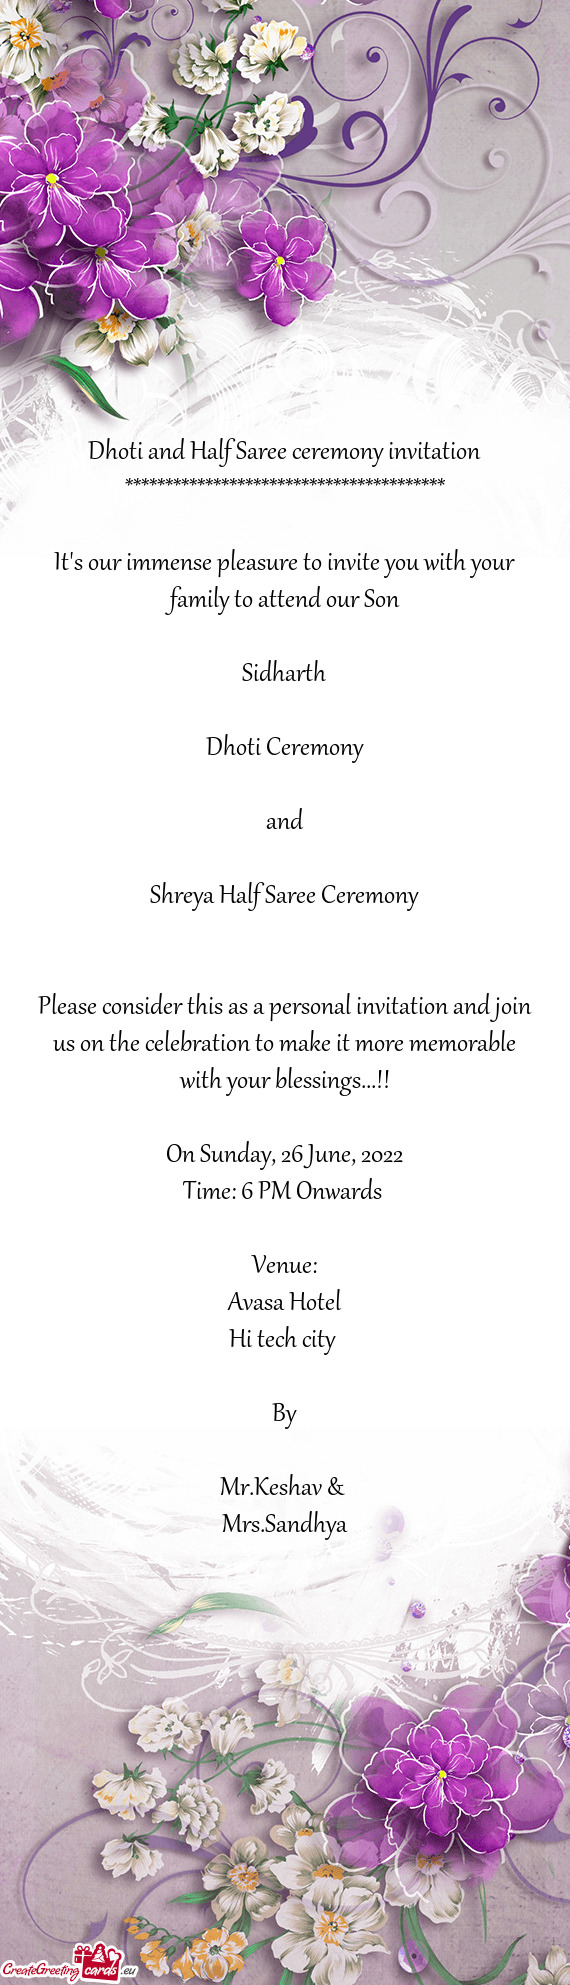 Shreya Half Saree Ceremony